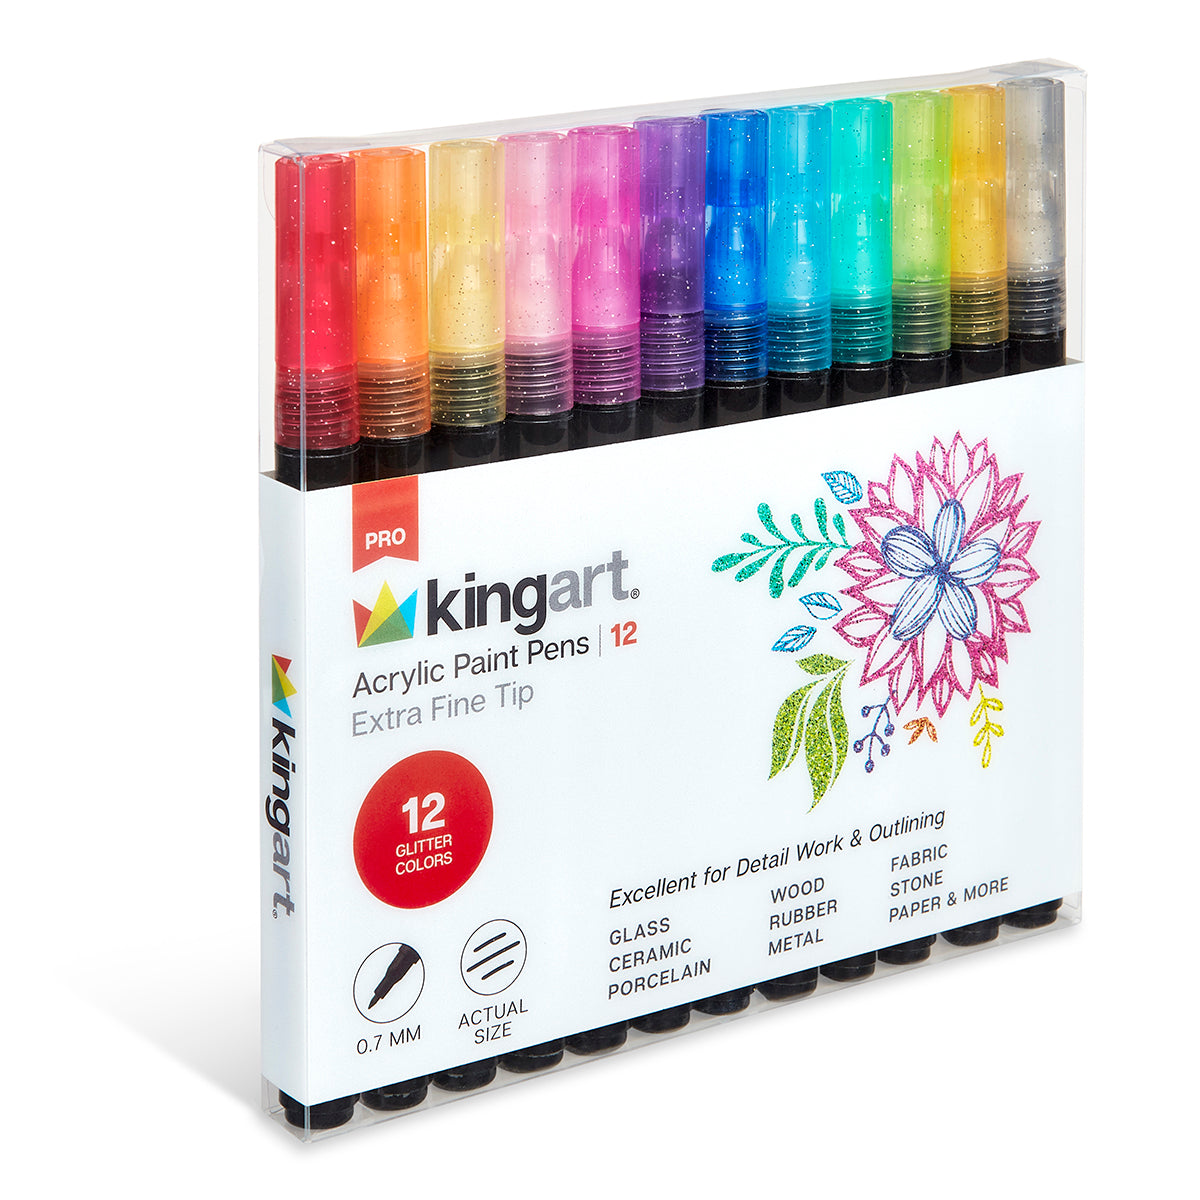 High-Quality Acrylic Paint Pens by Paintigo - Unleash Your Creativity